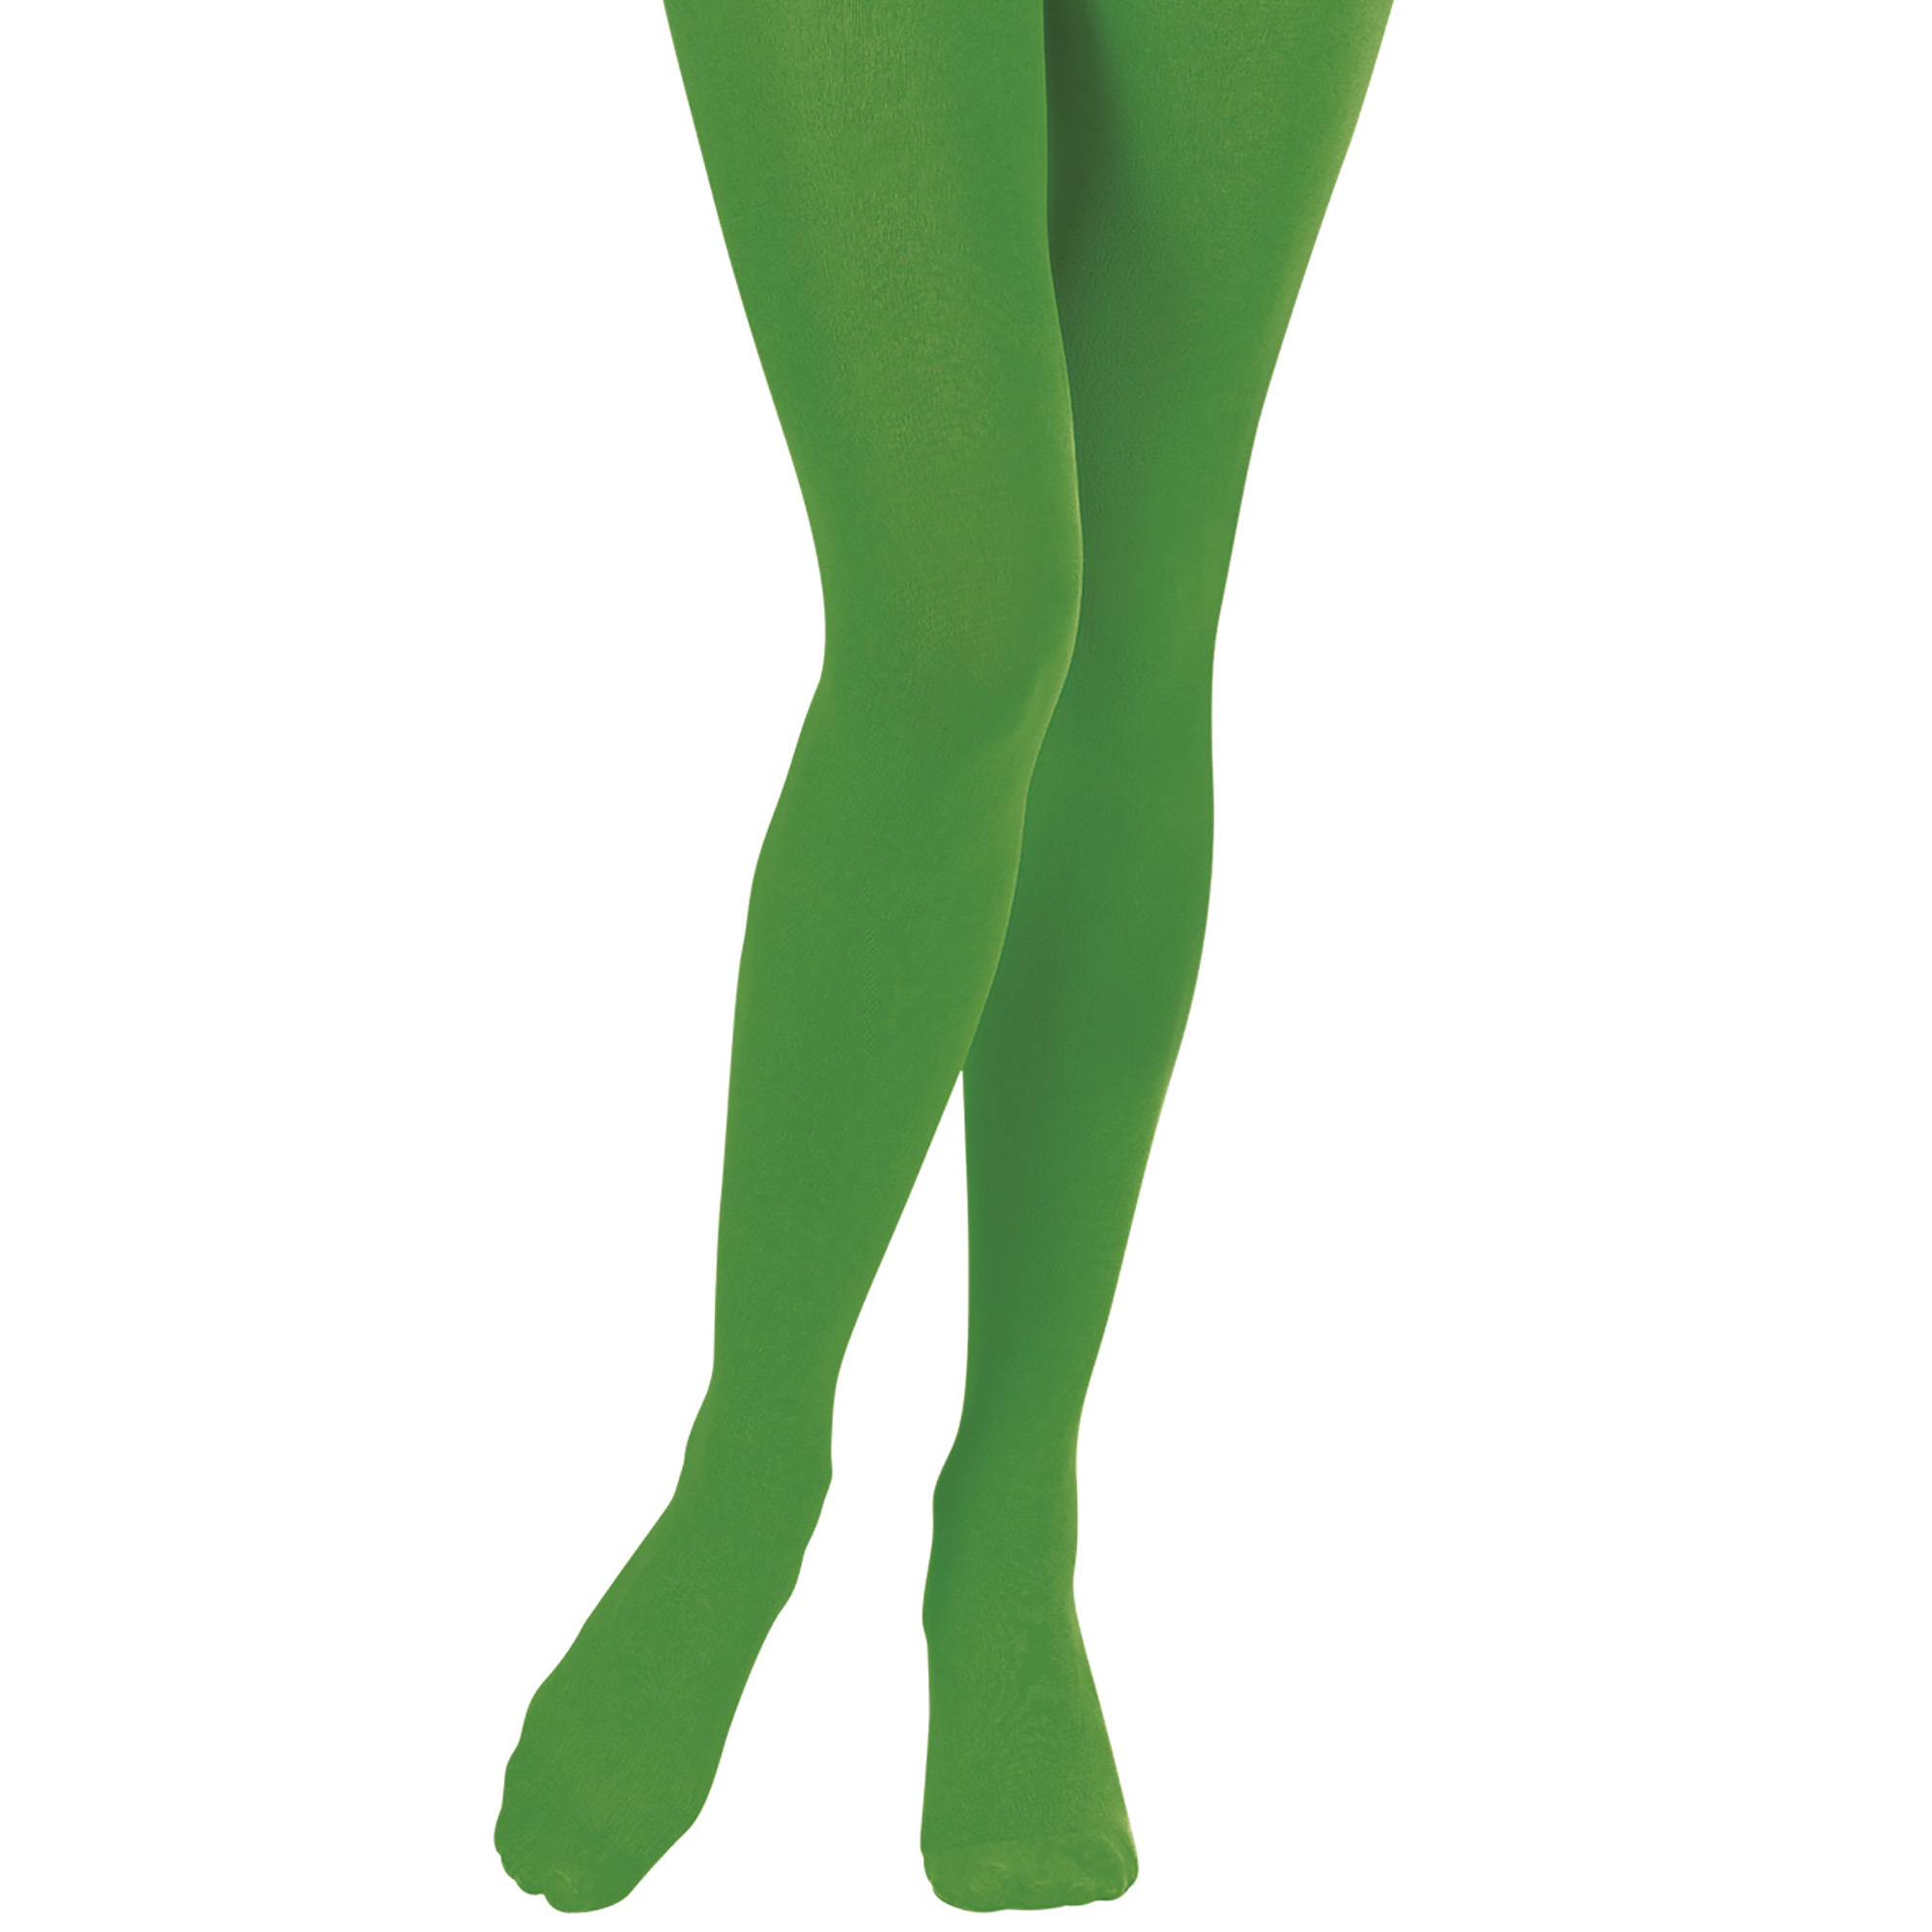 Daarom Trots Broers en zussen Accessoires voor Halloween groene panty - e-Carnavalskleding